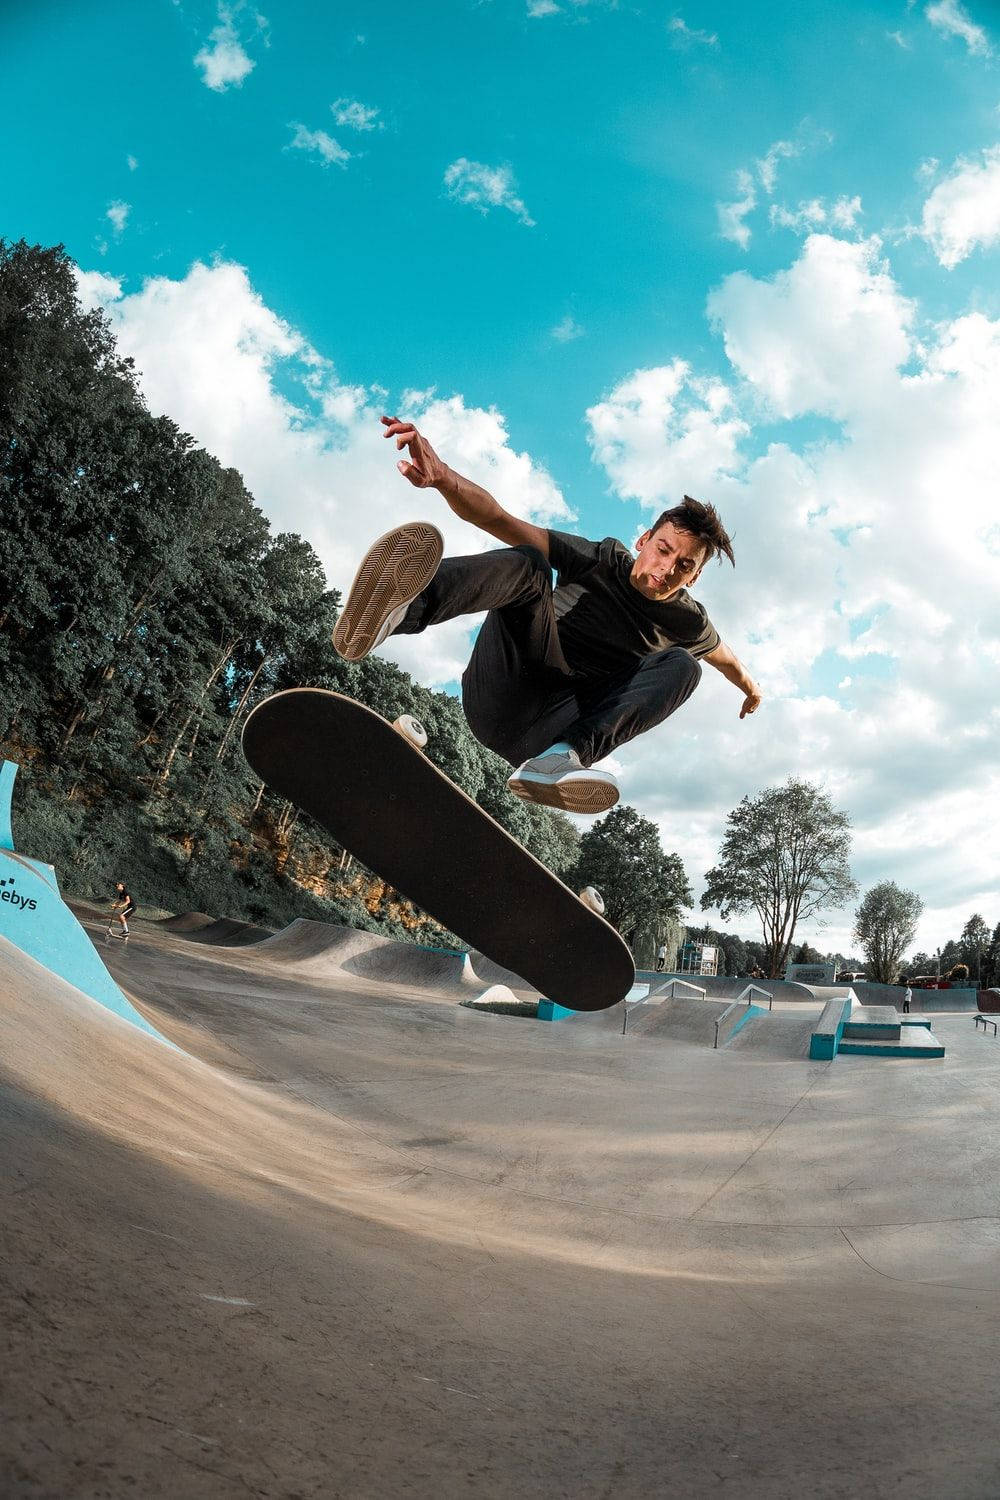 Aesthetic Skateboard Blue Sky